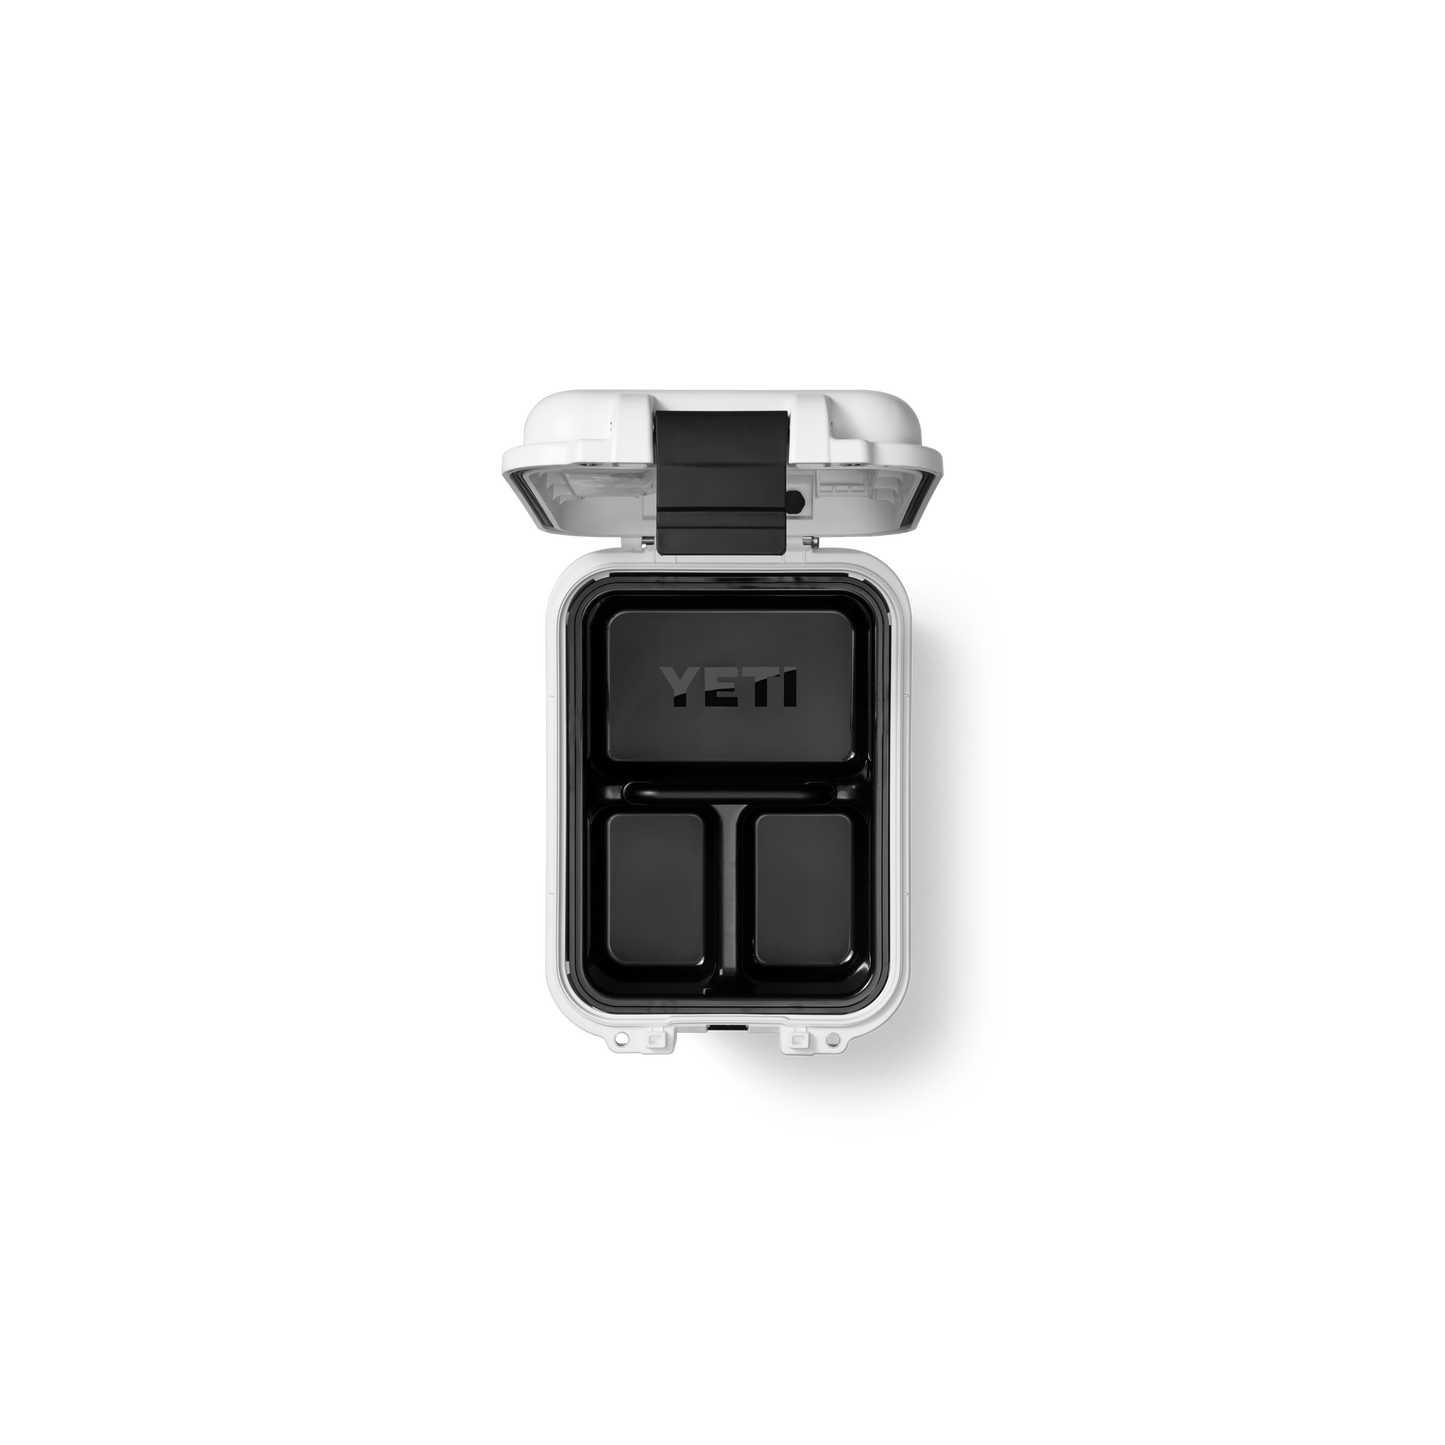 YETI LoadOut® gobox 15 Gear Case WhiteYETI LoadOut® GoBox 15 Gear Case White